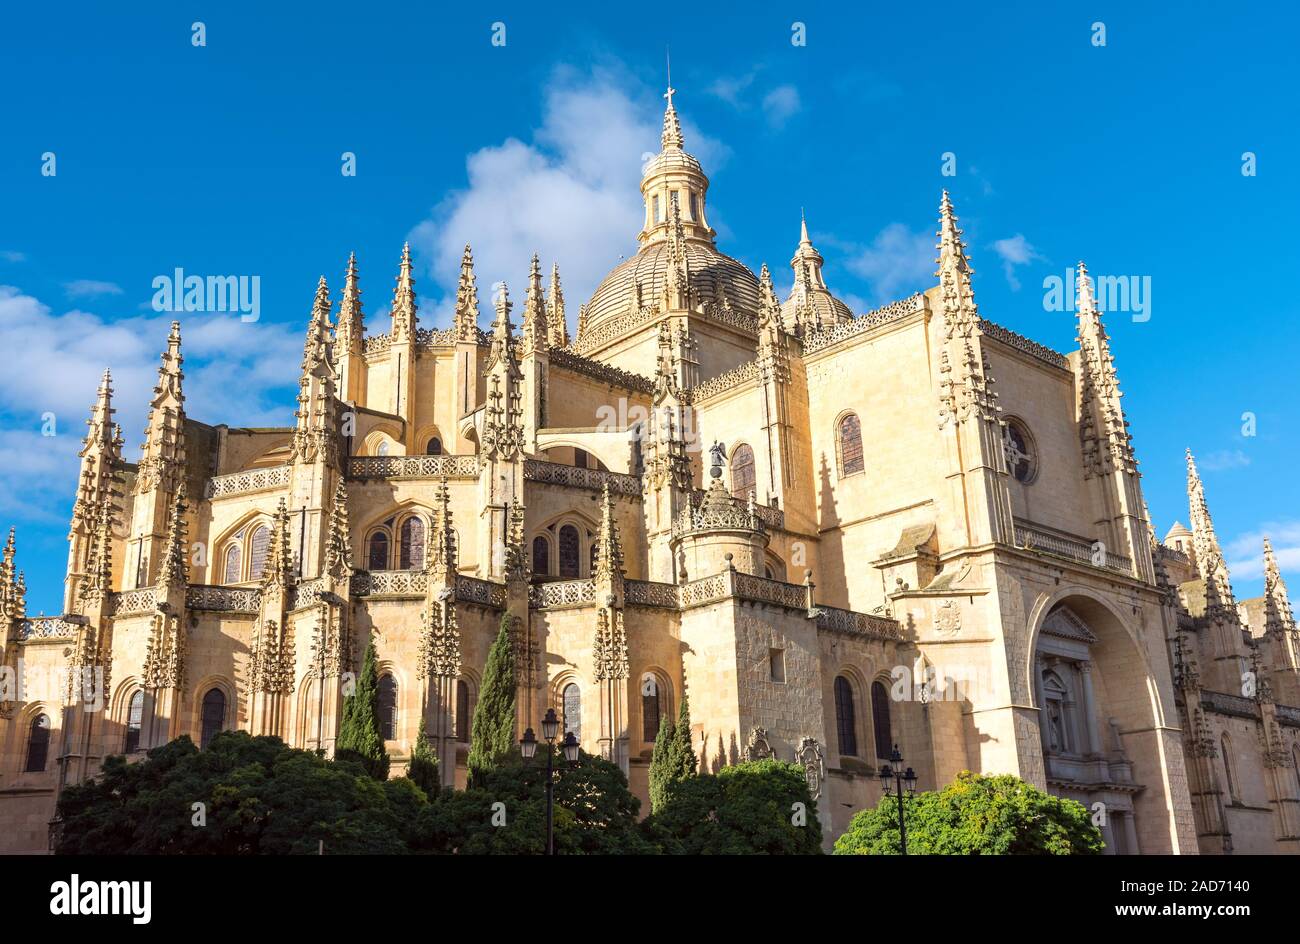 La imponente catedral de Segovia en España Foto de stock